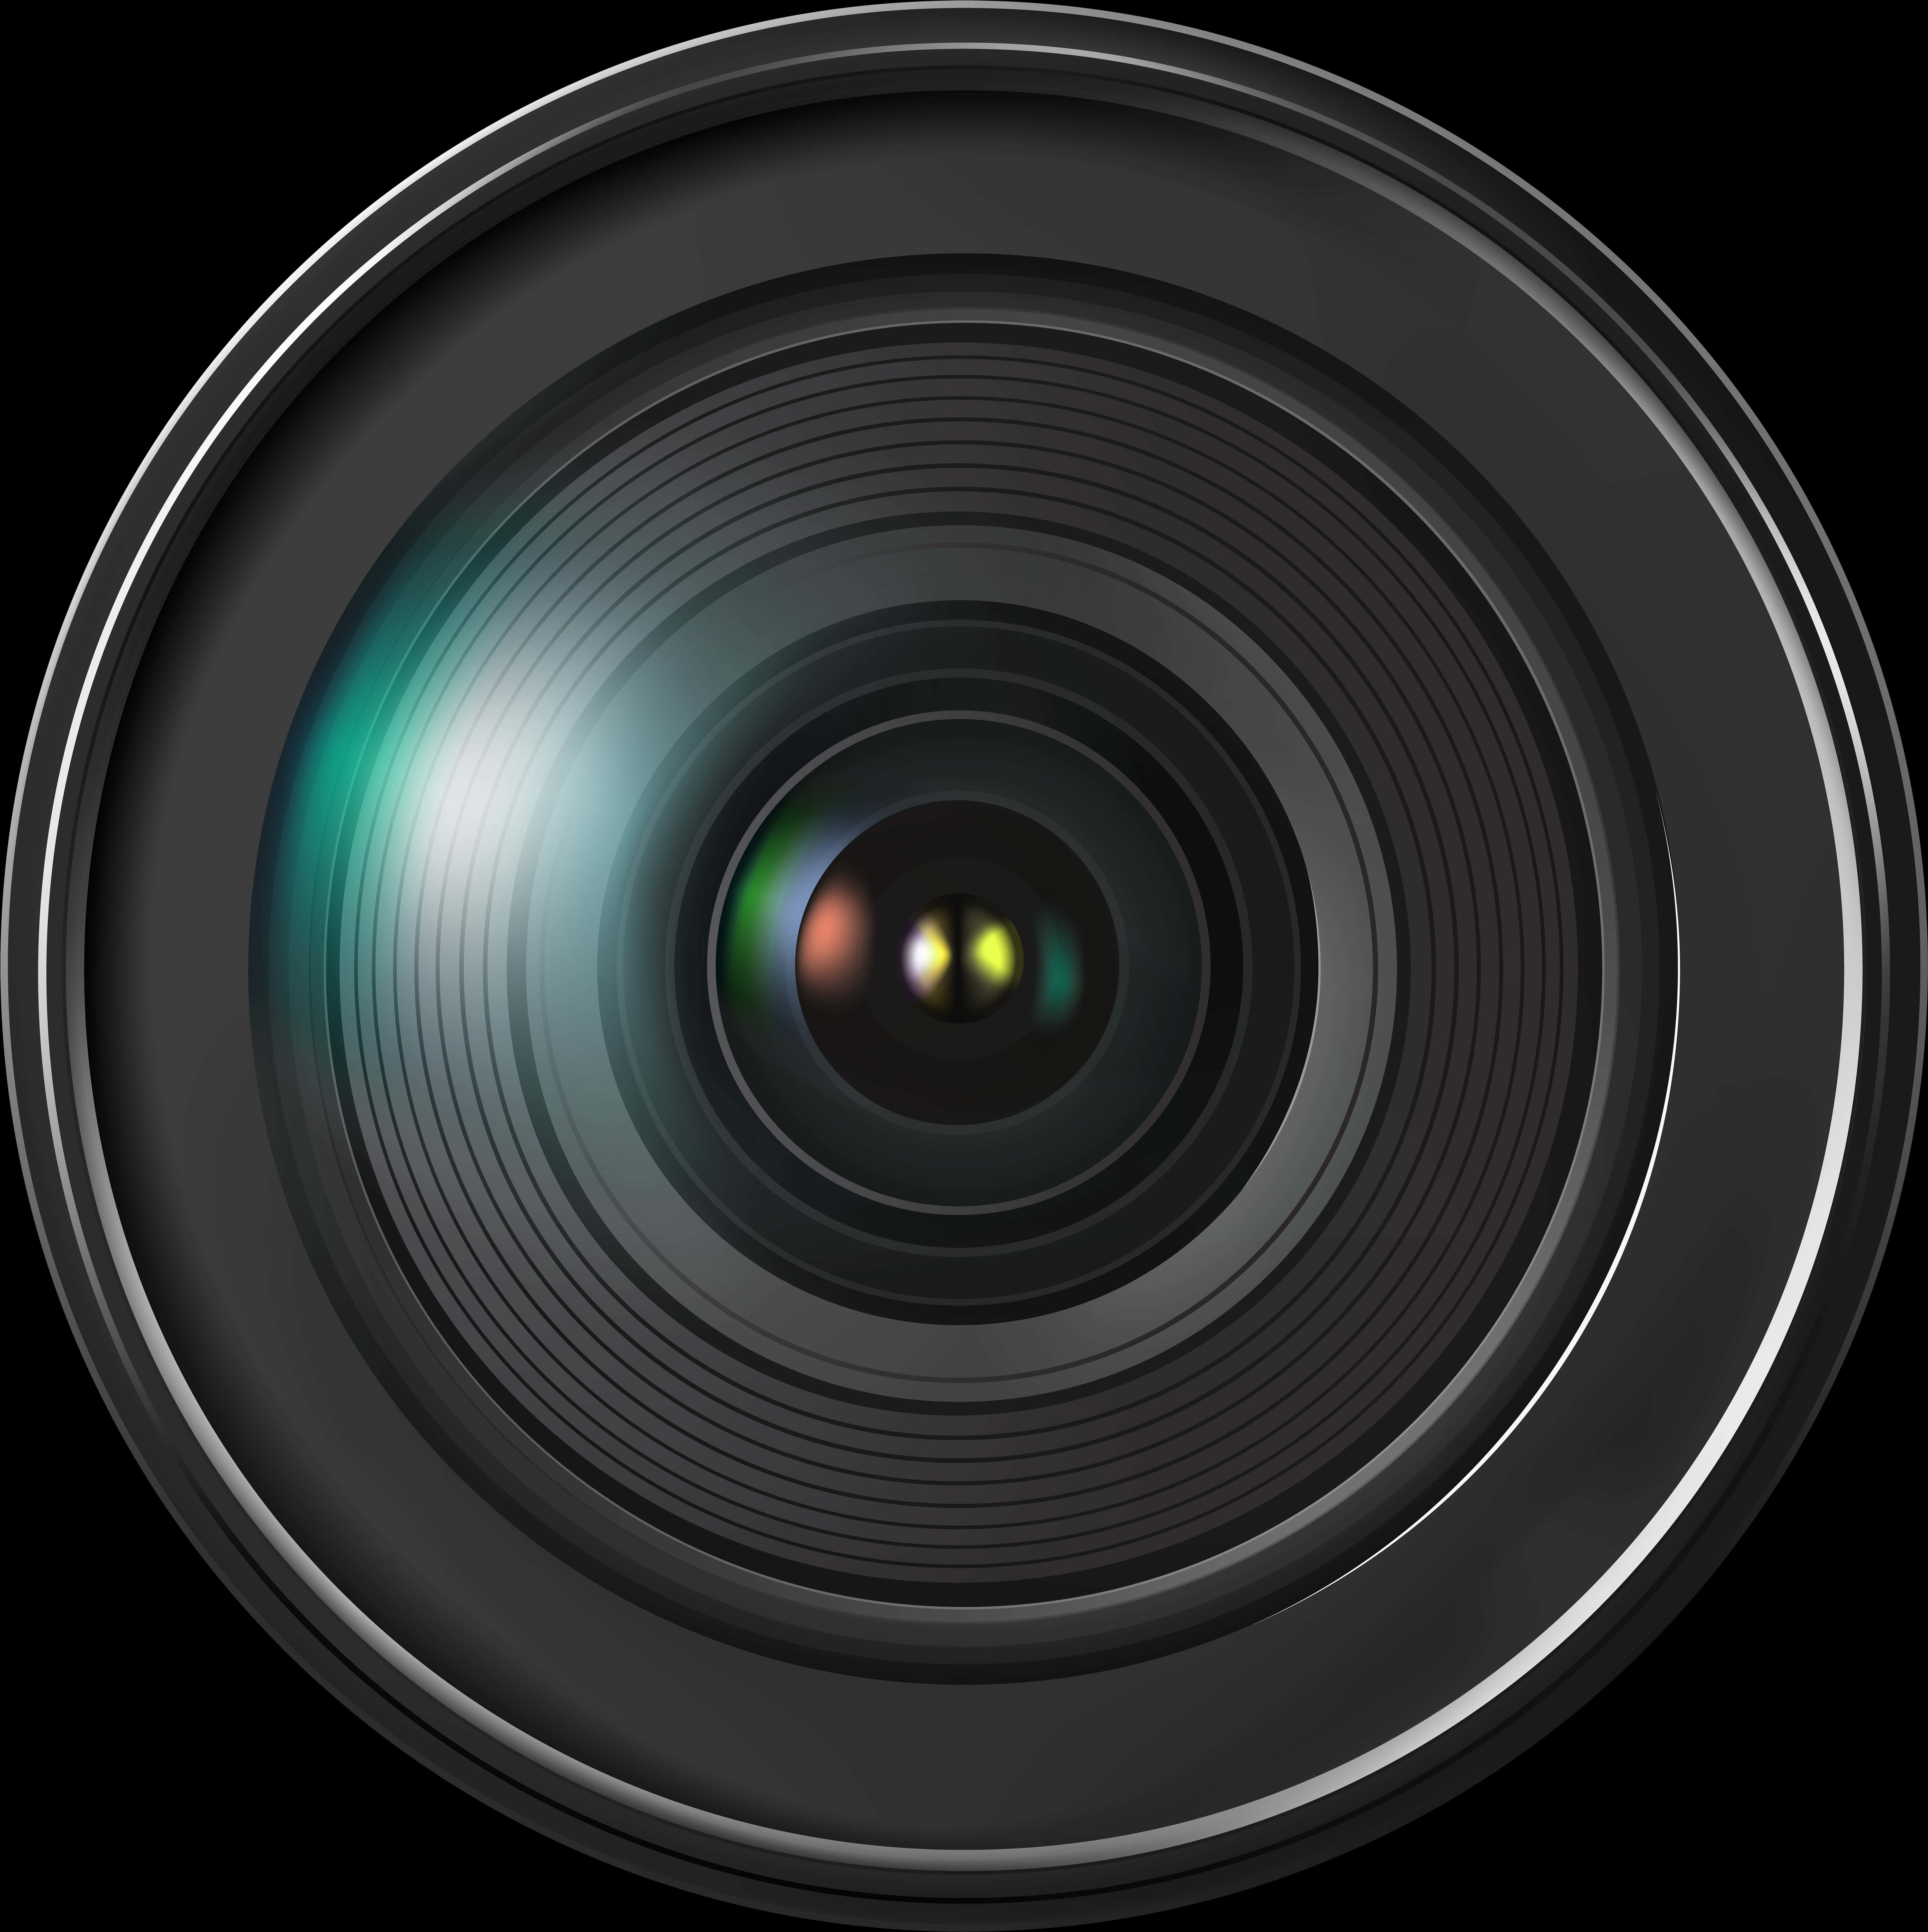 A Close Up Of A Camera Lens